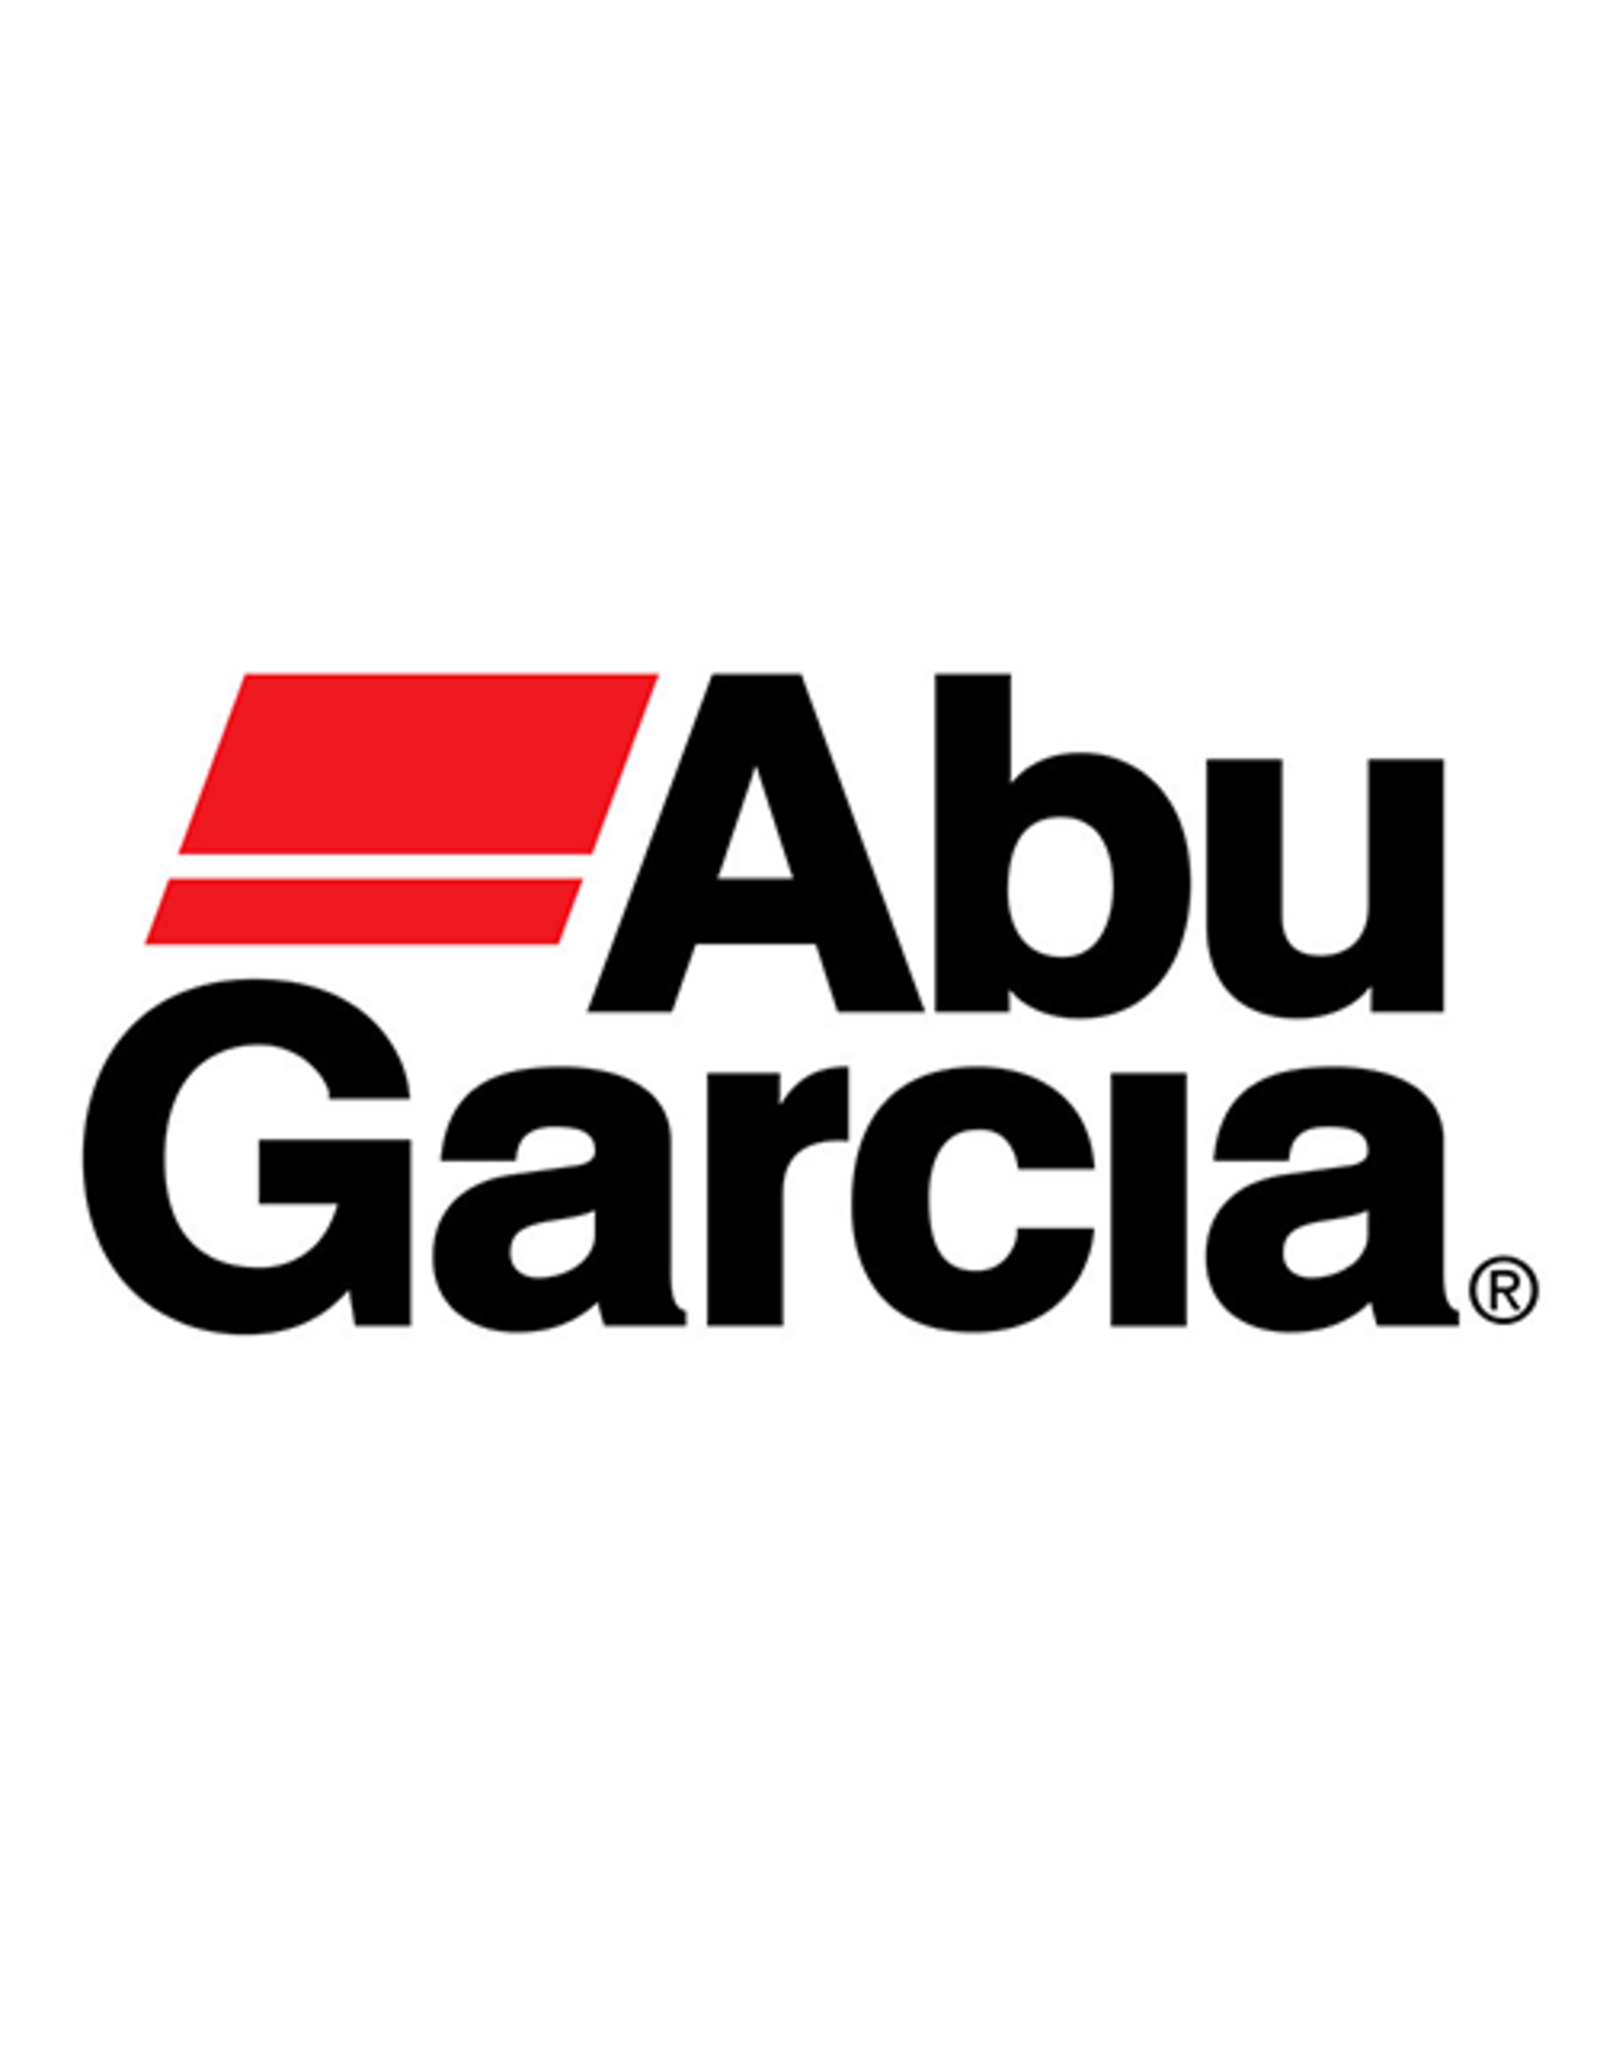 Abu Garcia 1085286  DRIVE GEAR